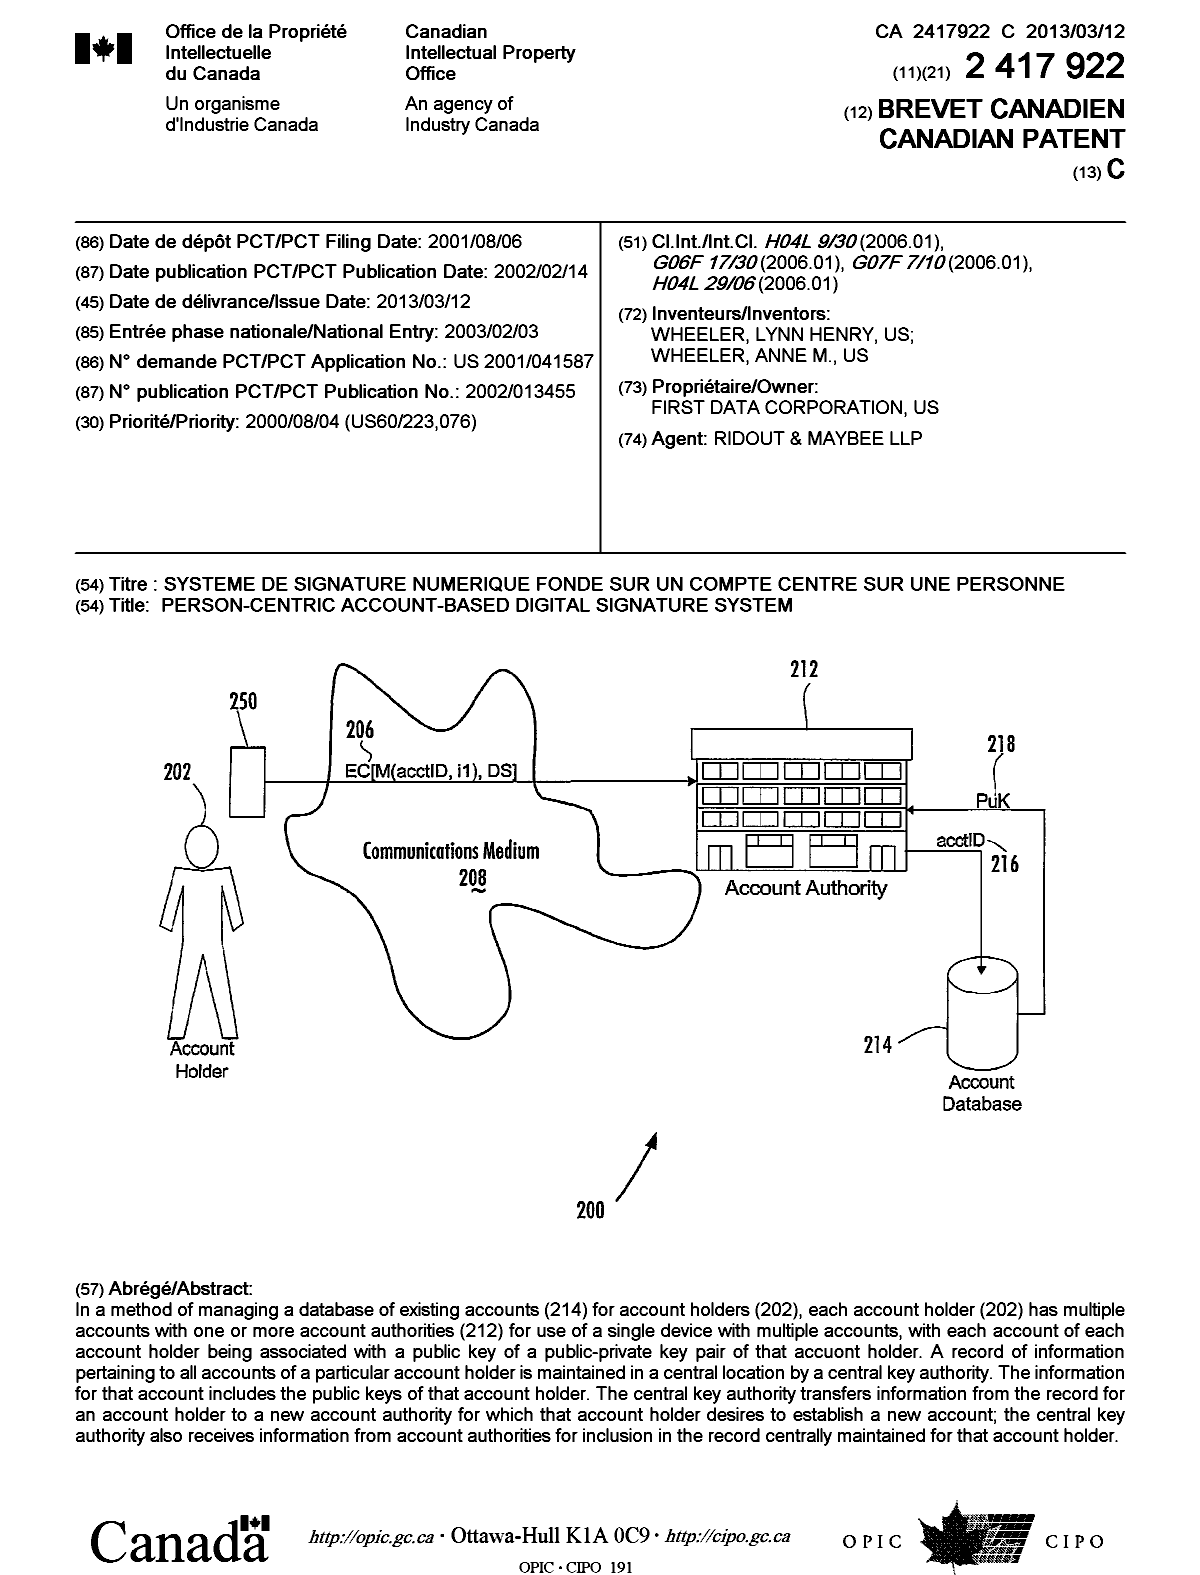 Document de brevet canadien 2417922. Page couverture 20130211. Image 1 de 1